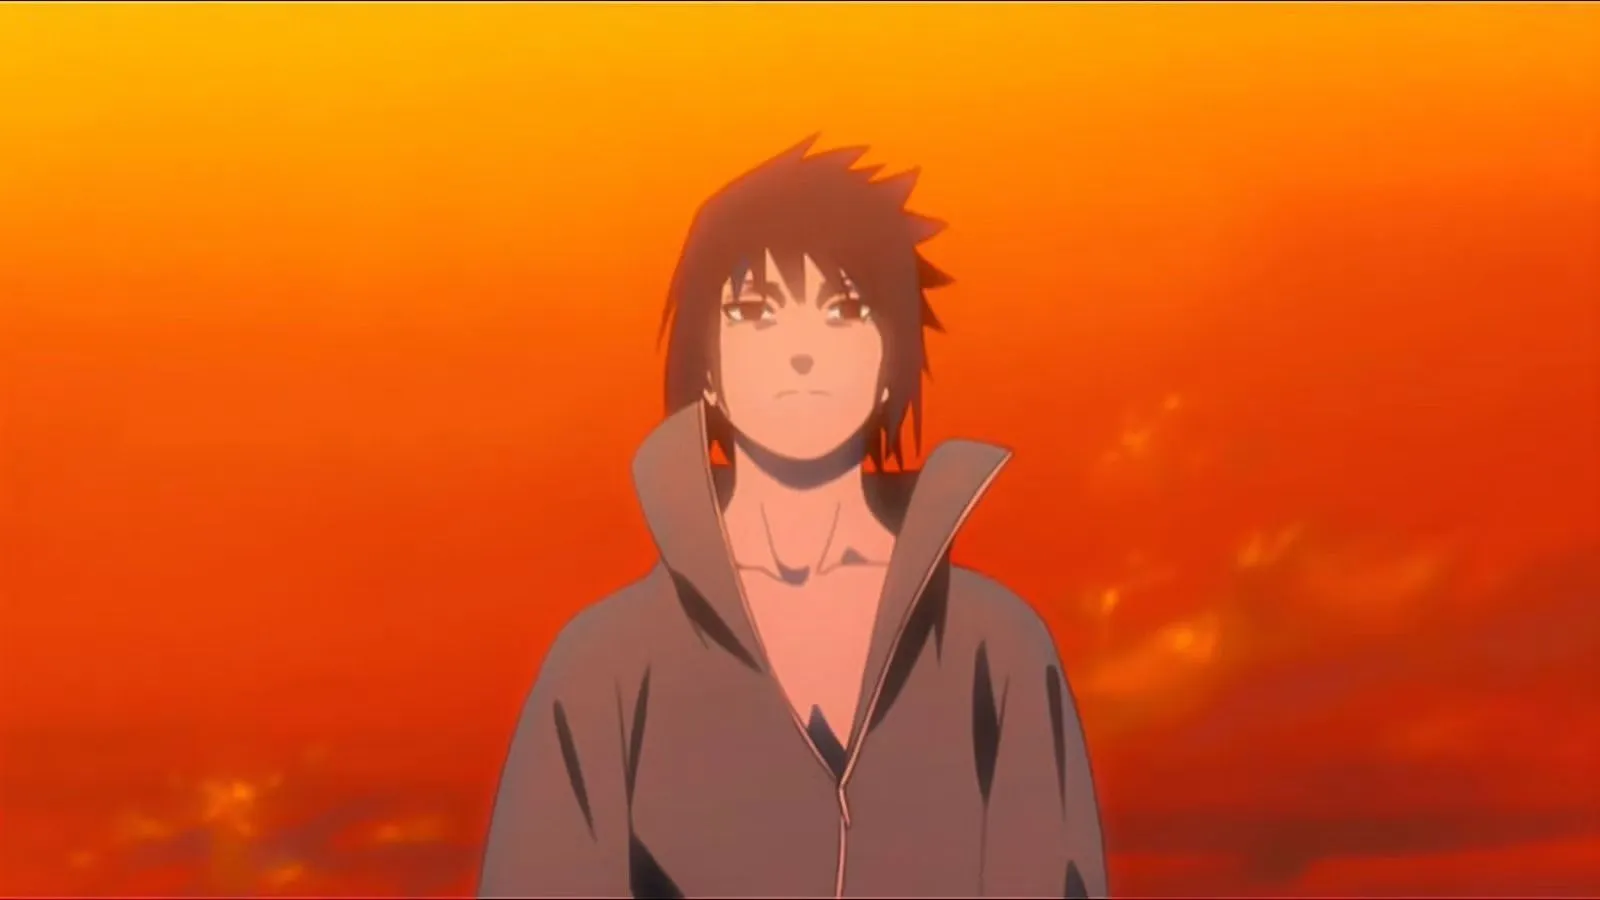 Il motivo per cui Sasuke vuole distruggere Konoha in Naruto.  (immagine da Studio Pierrot)